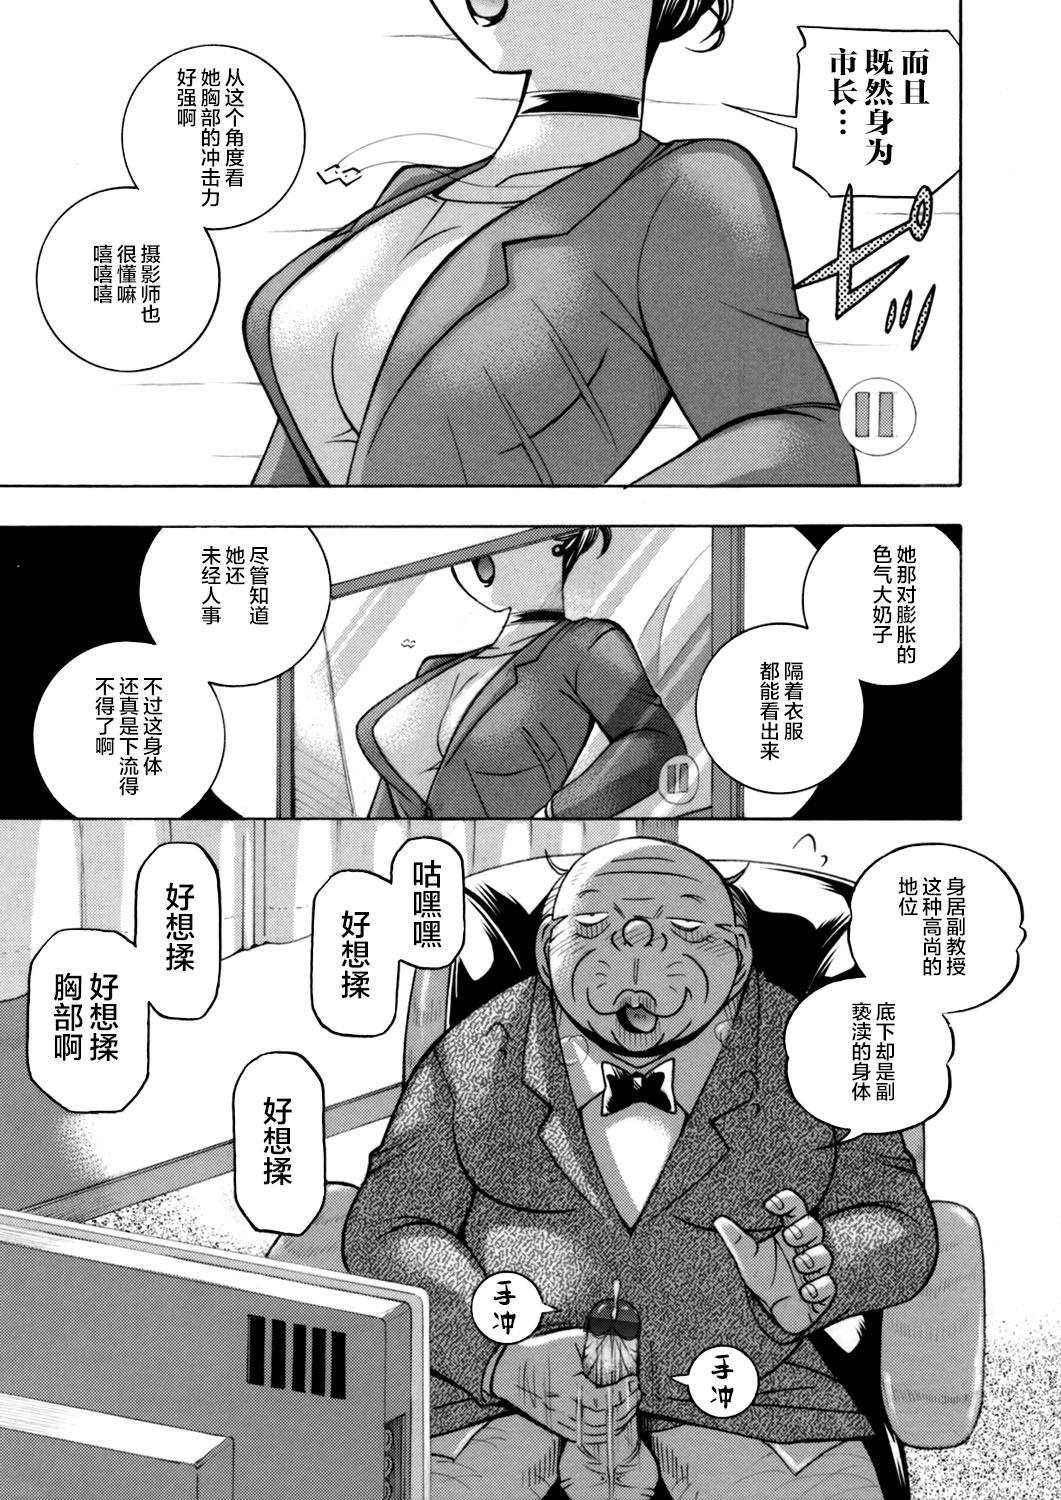 Clip Jiyunkyouju asako Glasses - Page 5